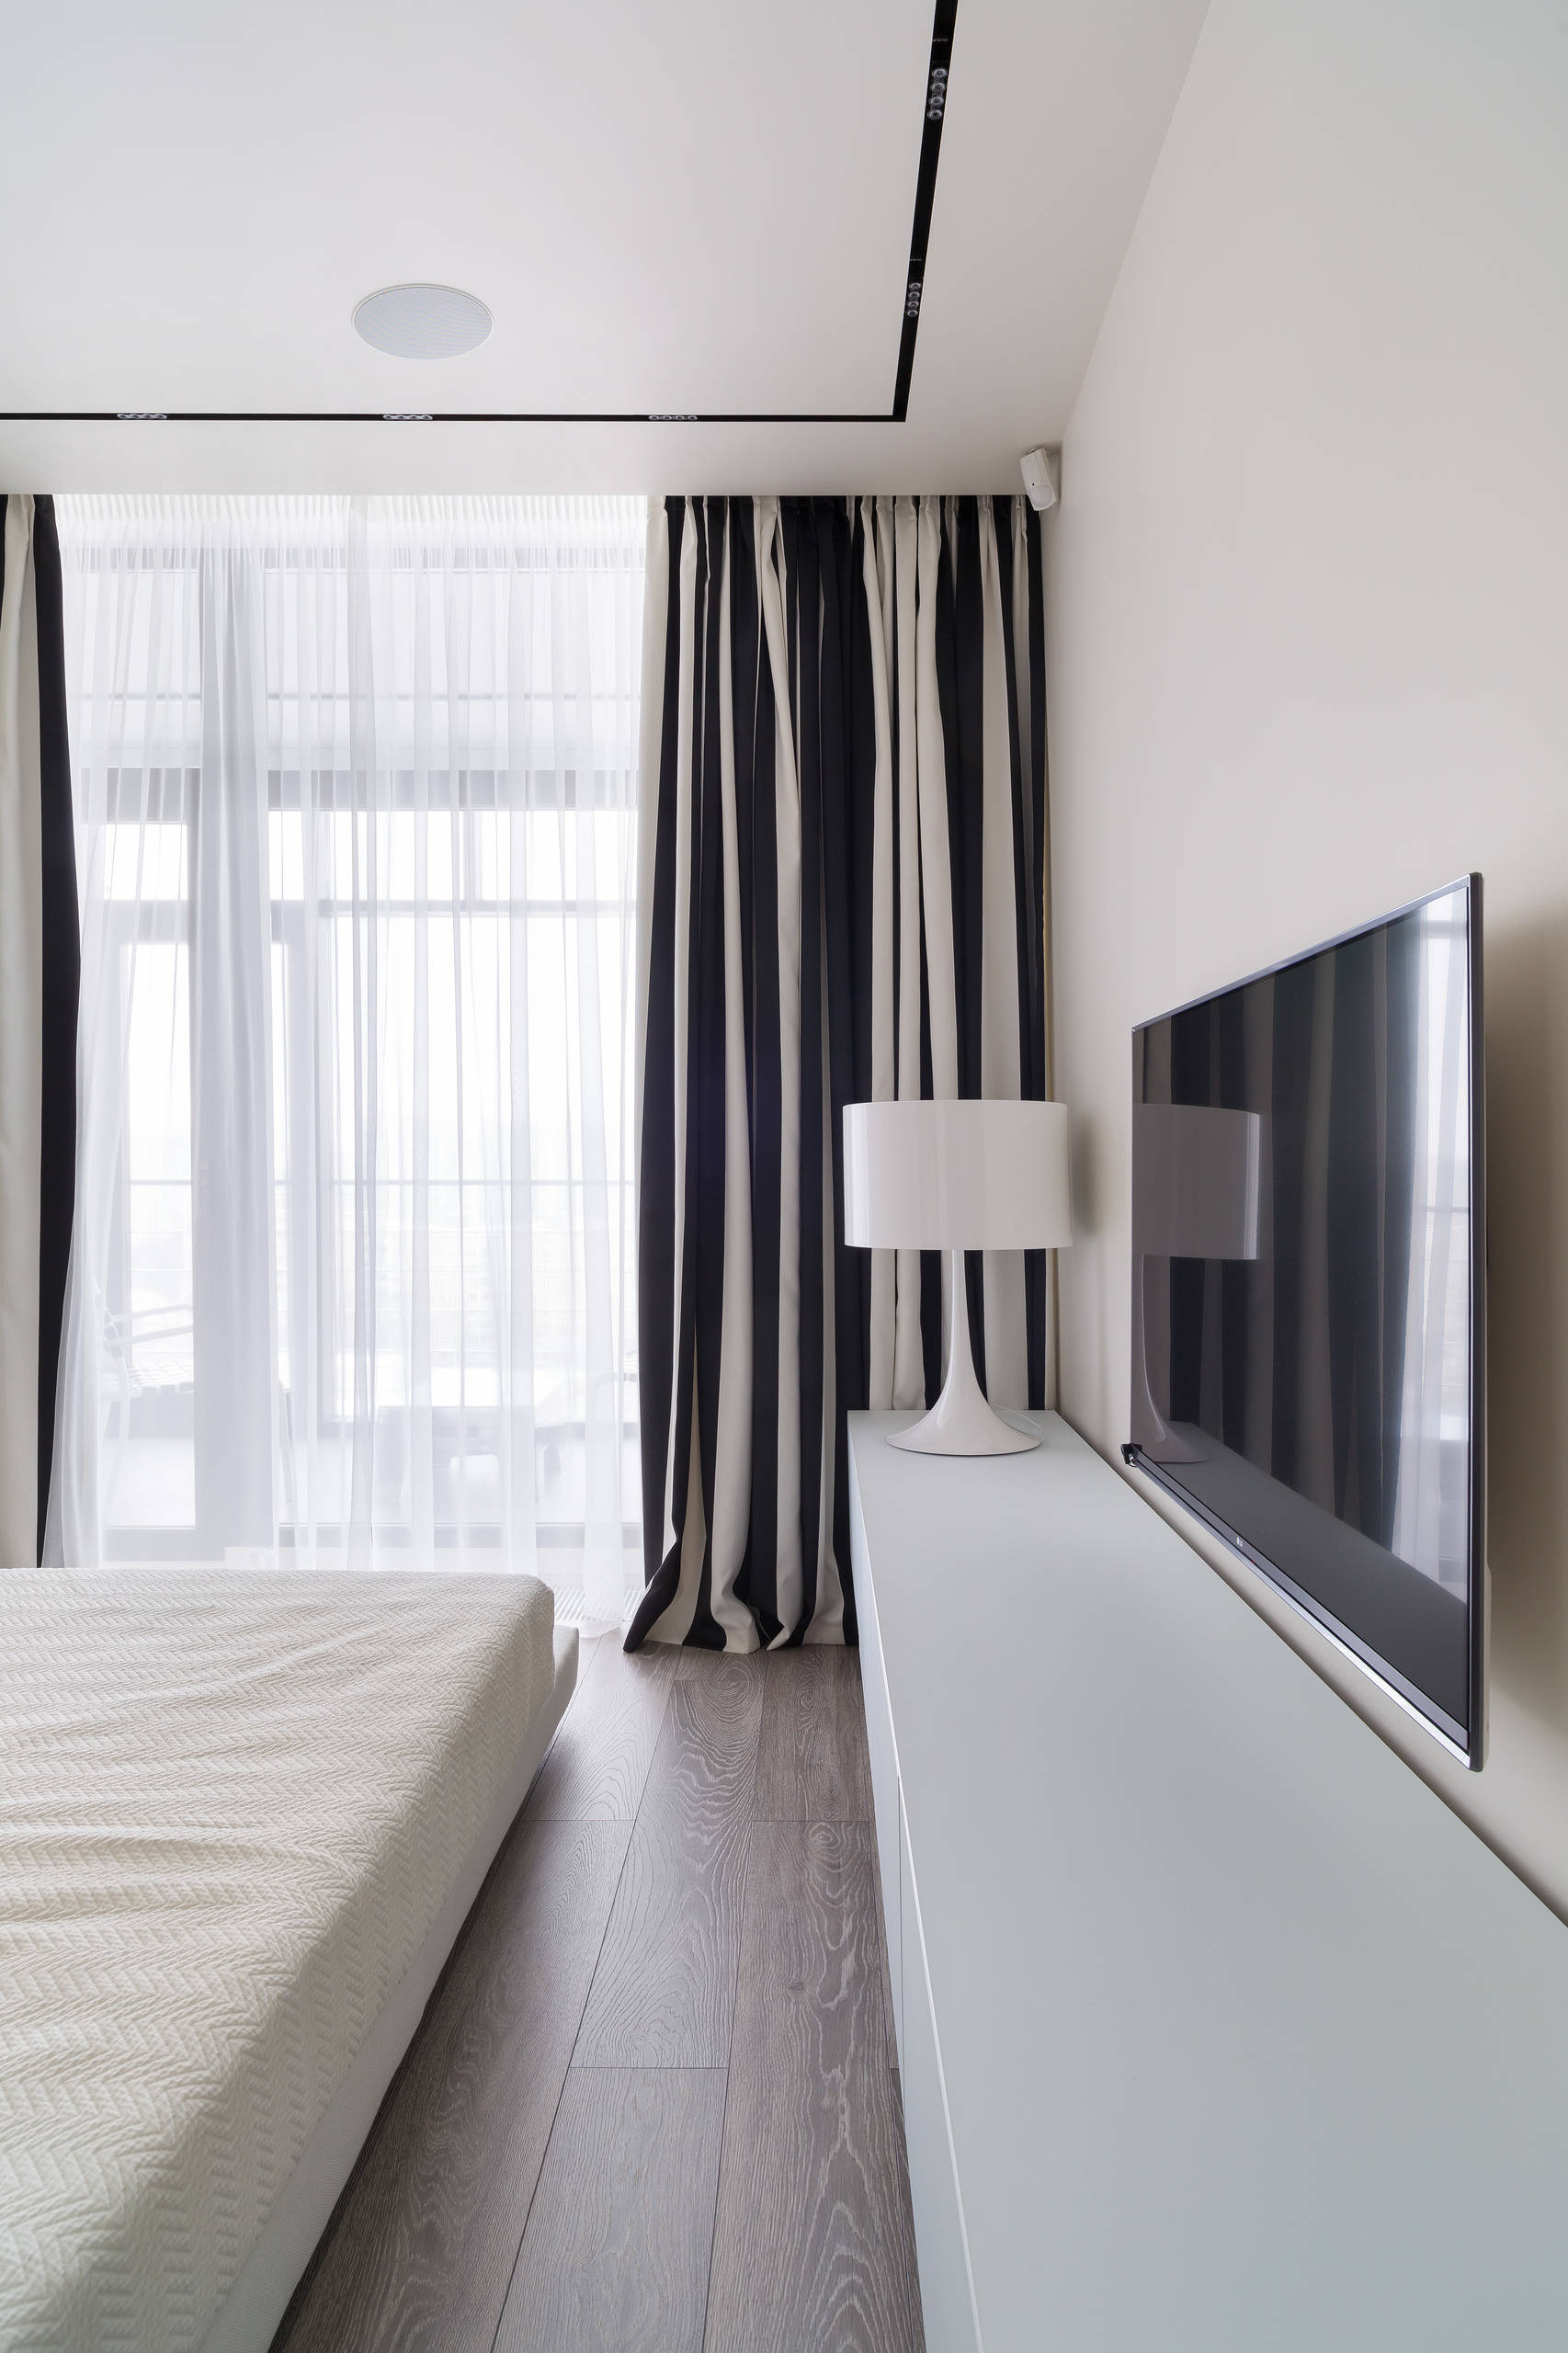 Дизайн комнаты для молодого человека в современном стиле: фото примеров интерьера